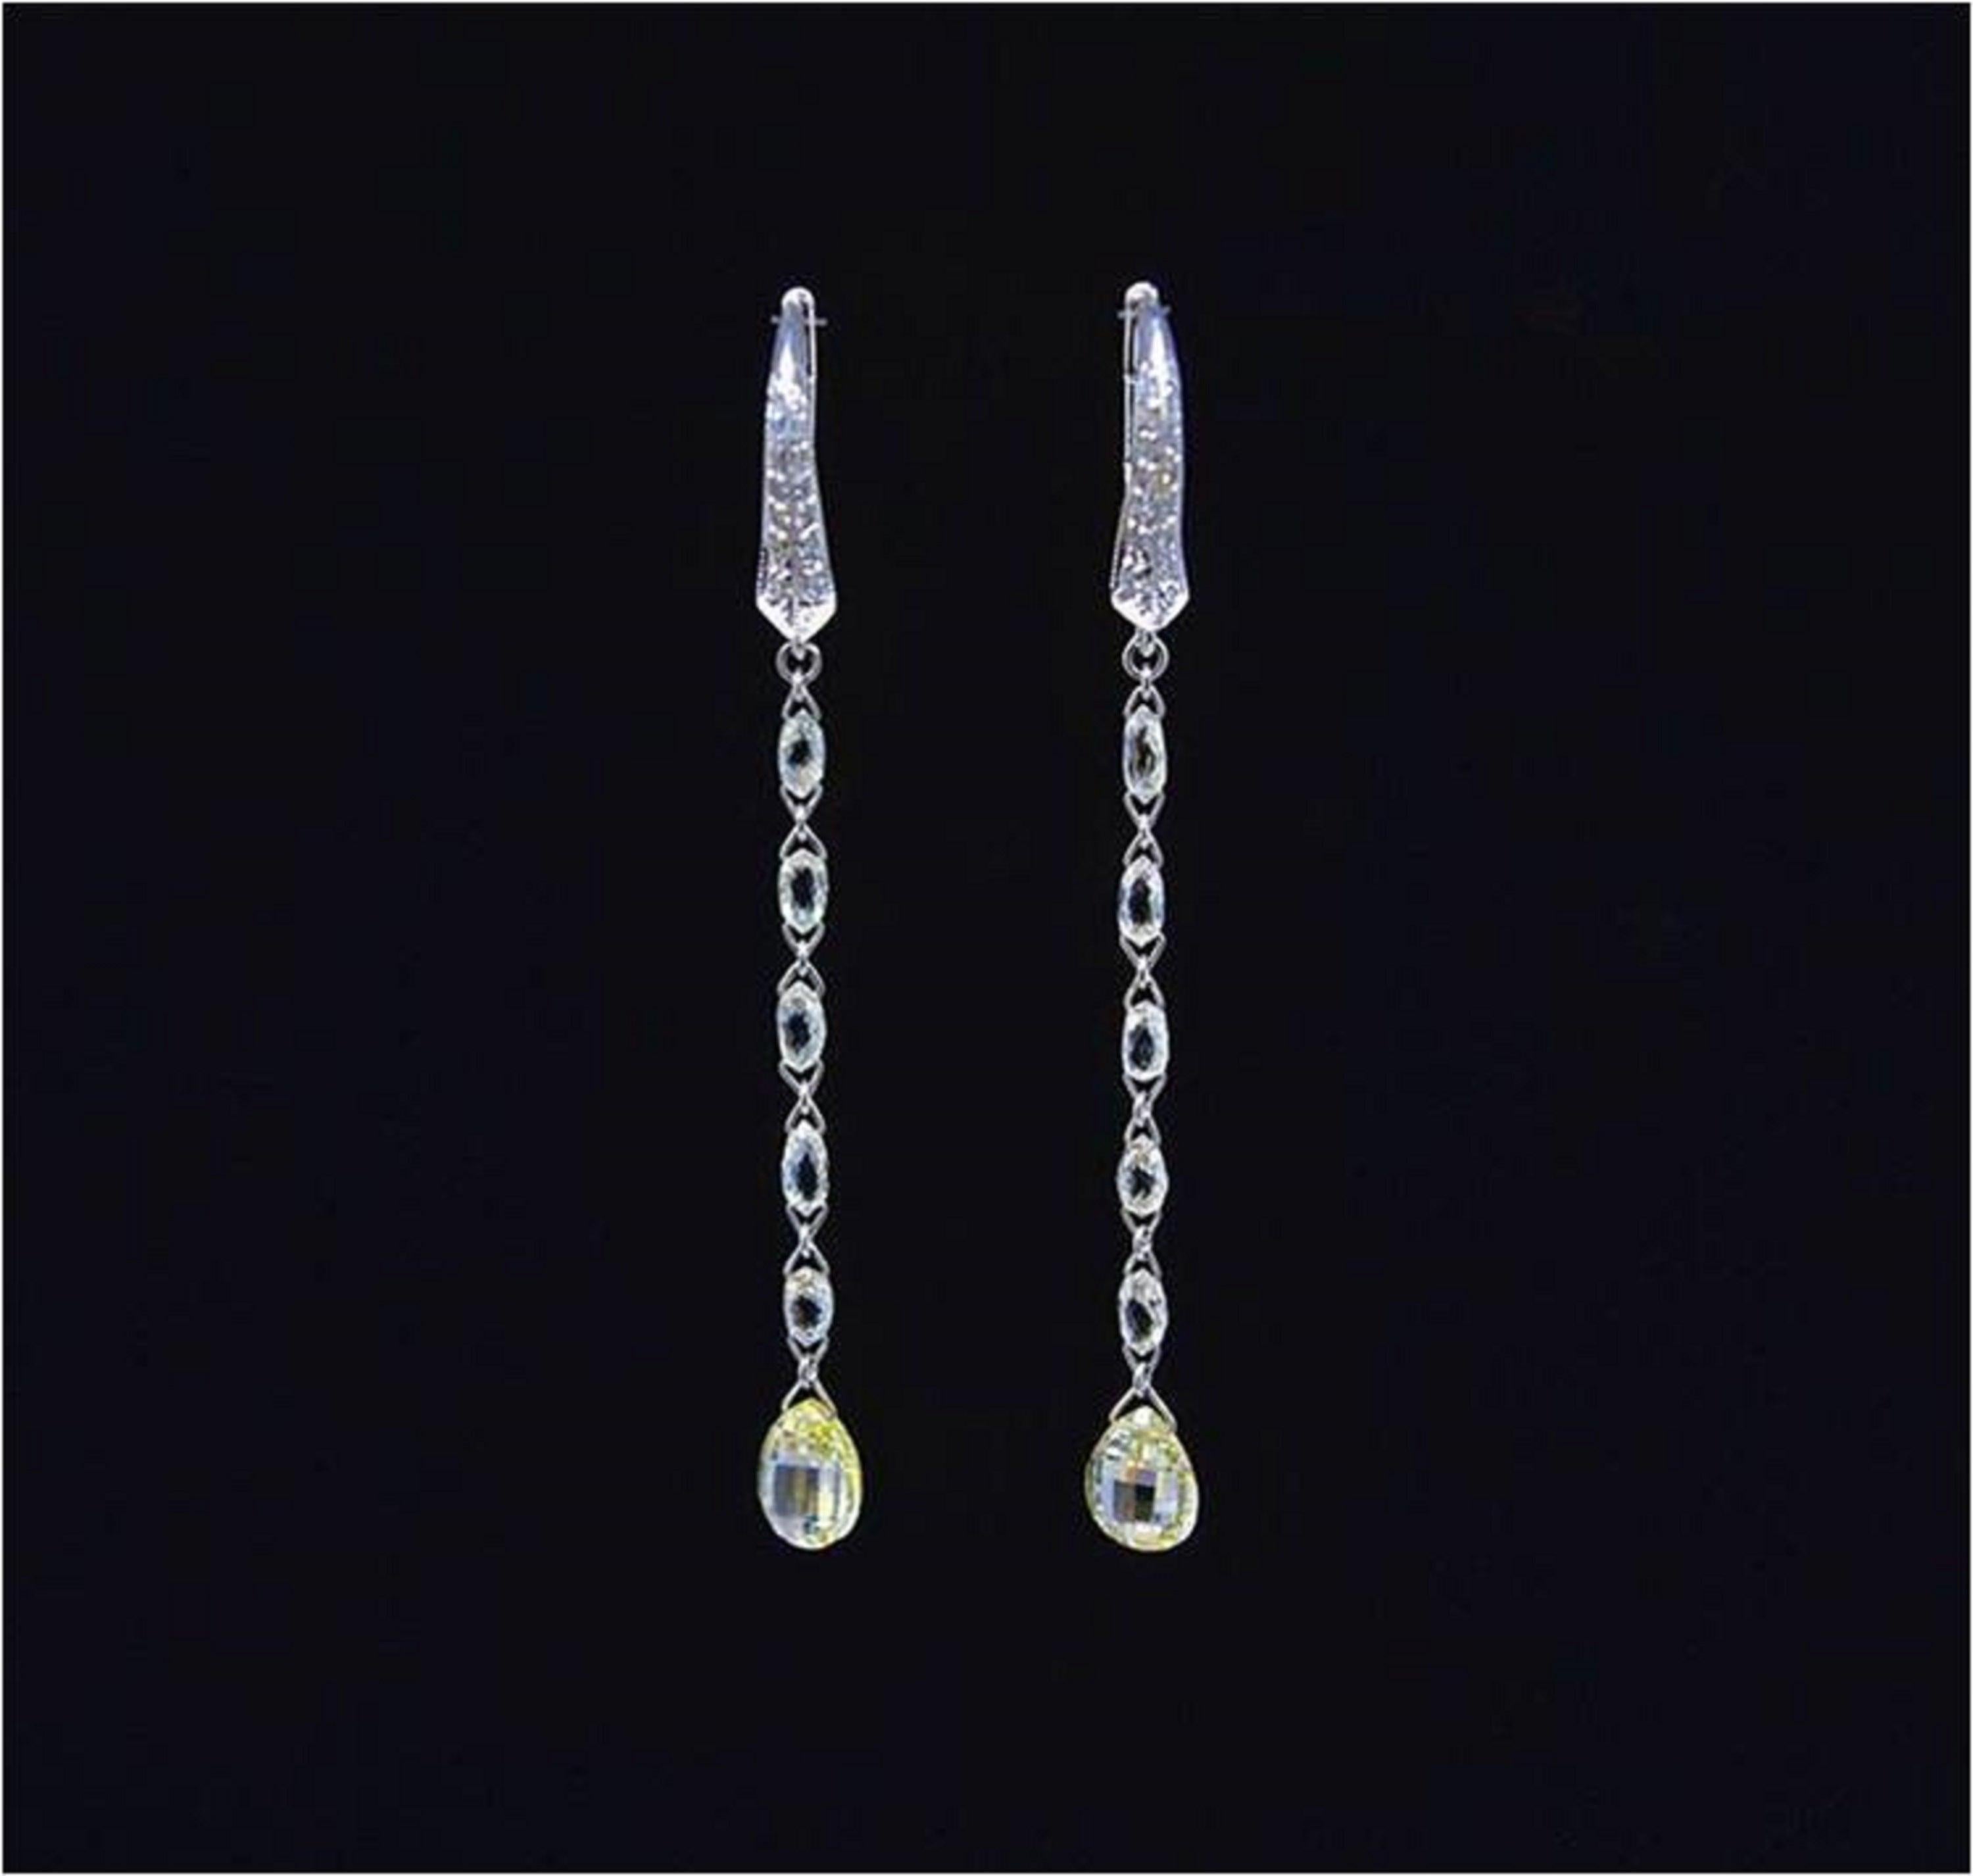 PANIM - Boucles d'oreilles monochromes en or blanc 18 carats avec briolette en diamant

Des boucles d'oreilles uniques, à porter au quotidien. Chaque boucle d'oreille contient des briolettes de diamant en forme de goutte avec des briolettes de